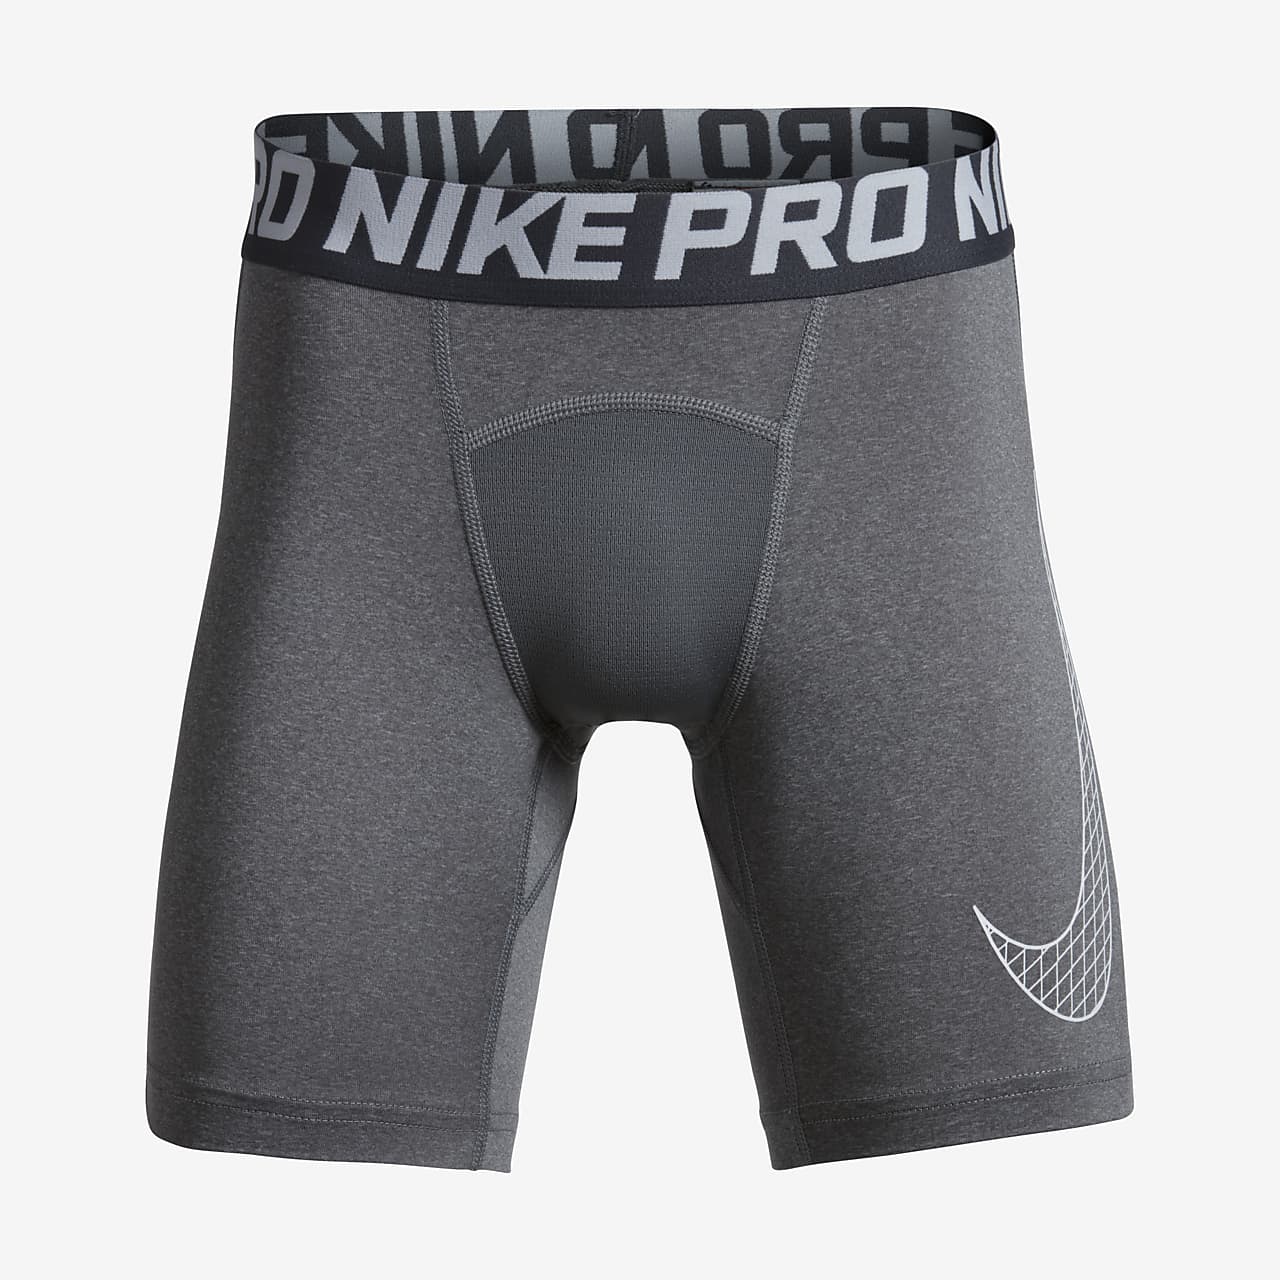 Nike Pro shorts for store barn (gutt)